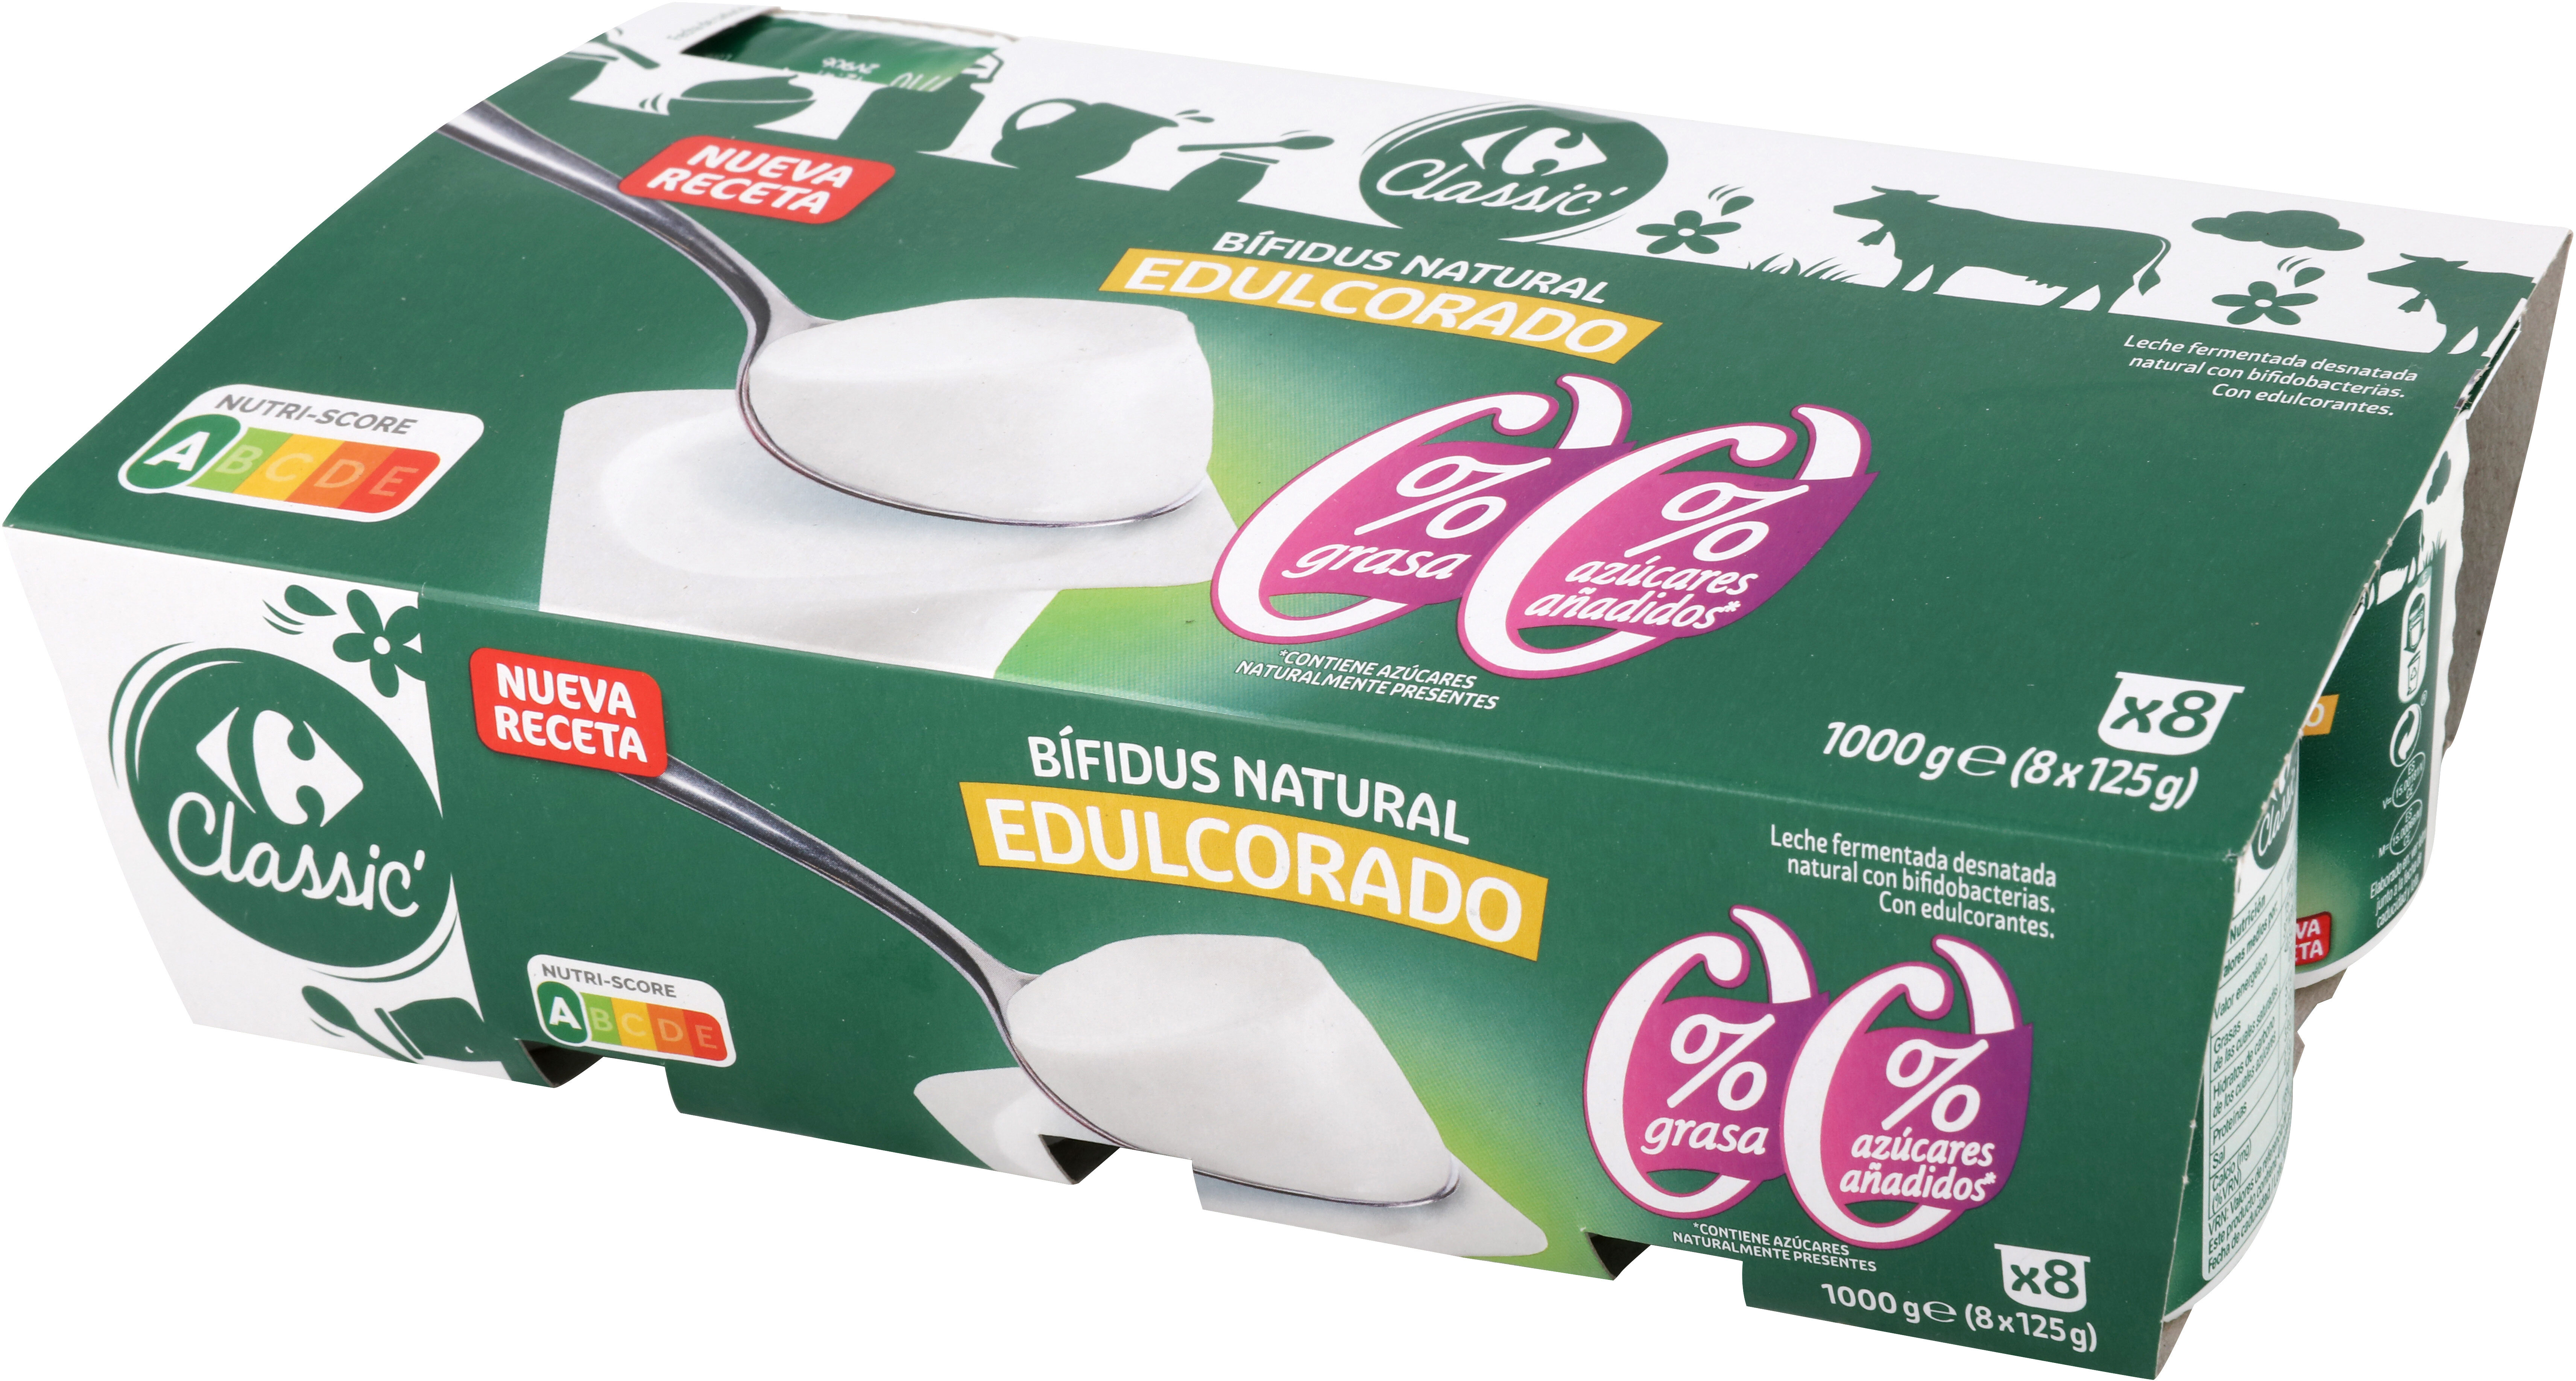 Bifidus Natural Edulcorado 00% - Producte - es